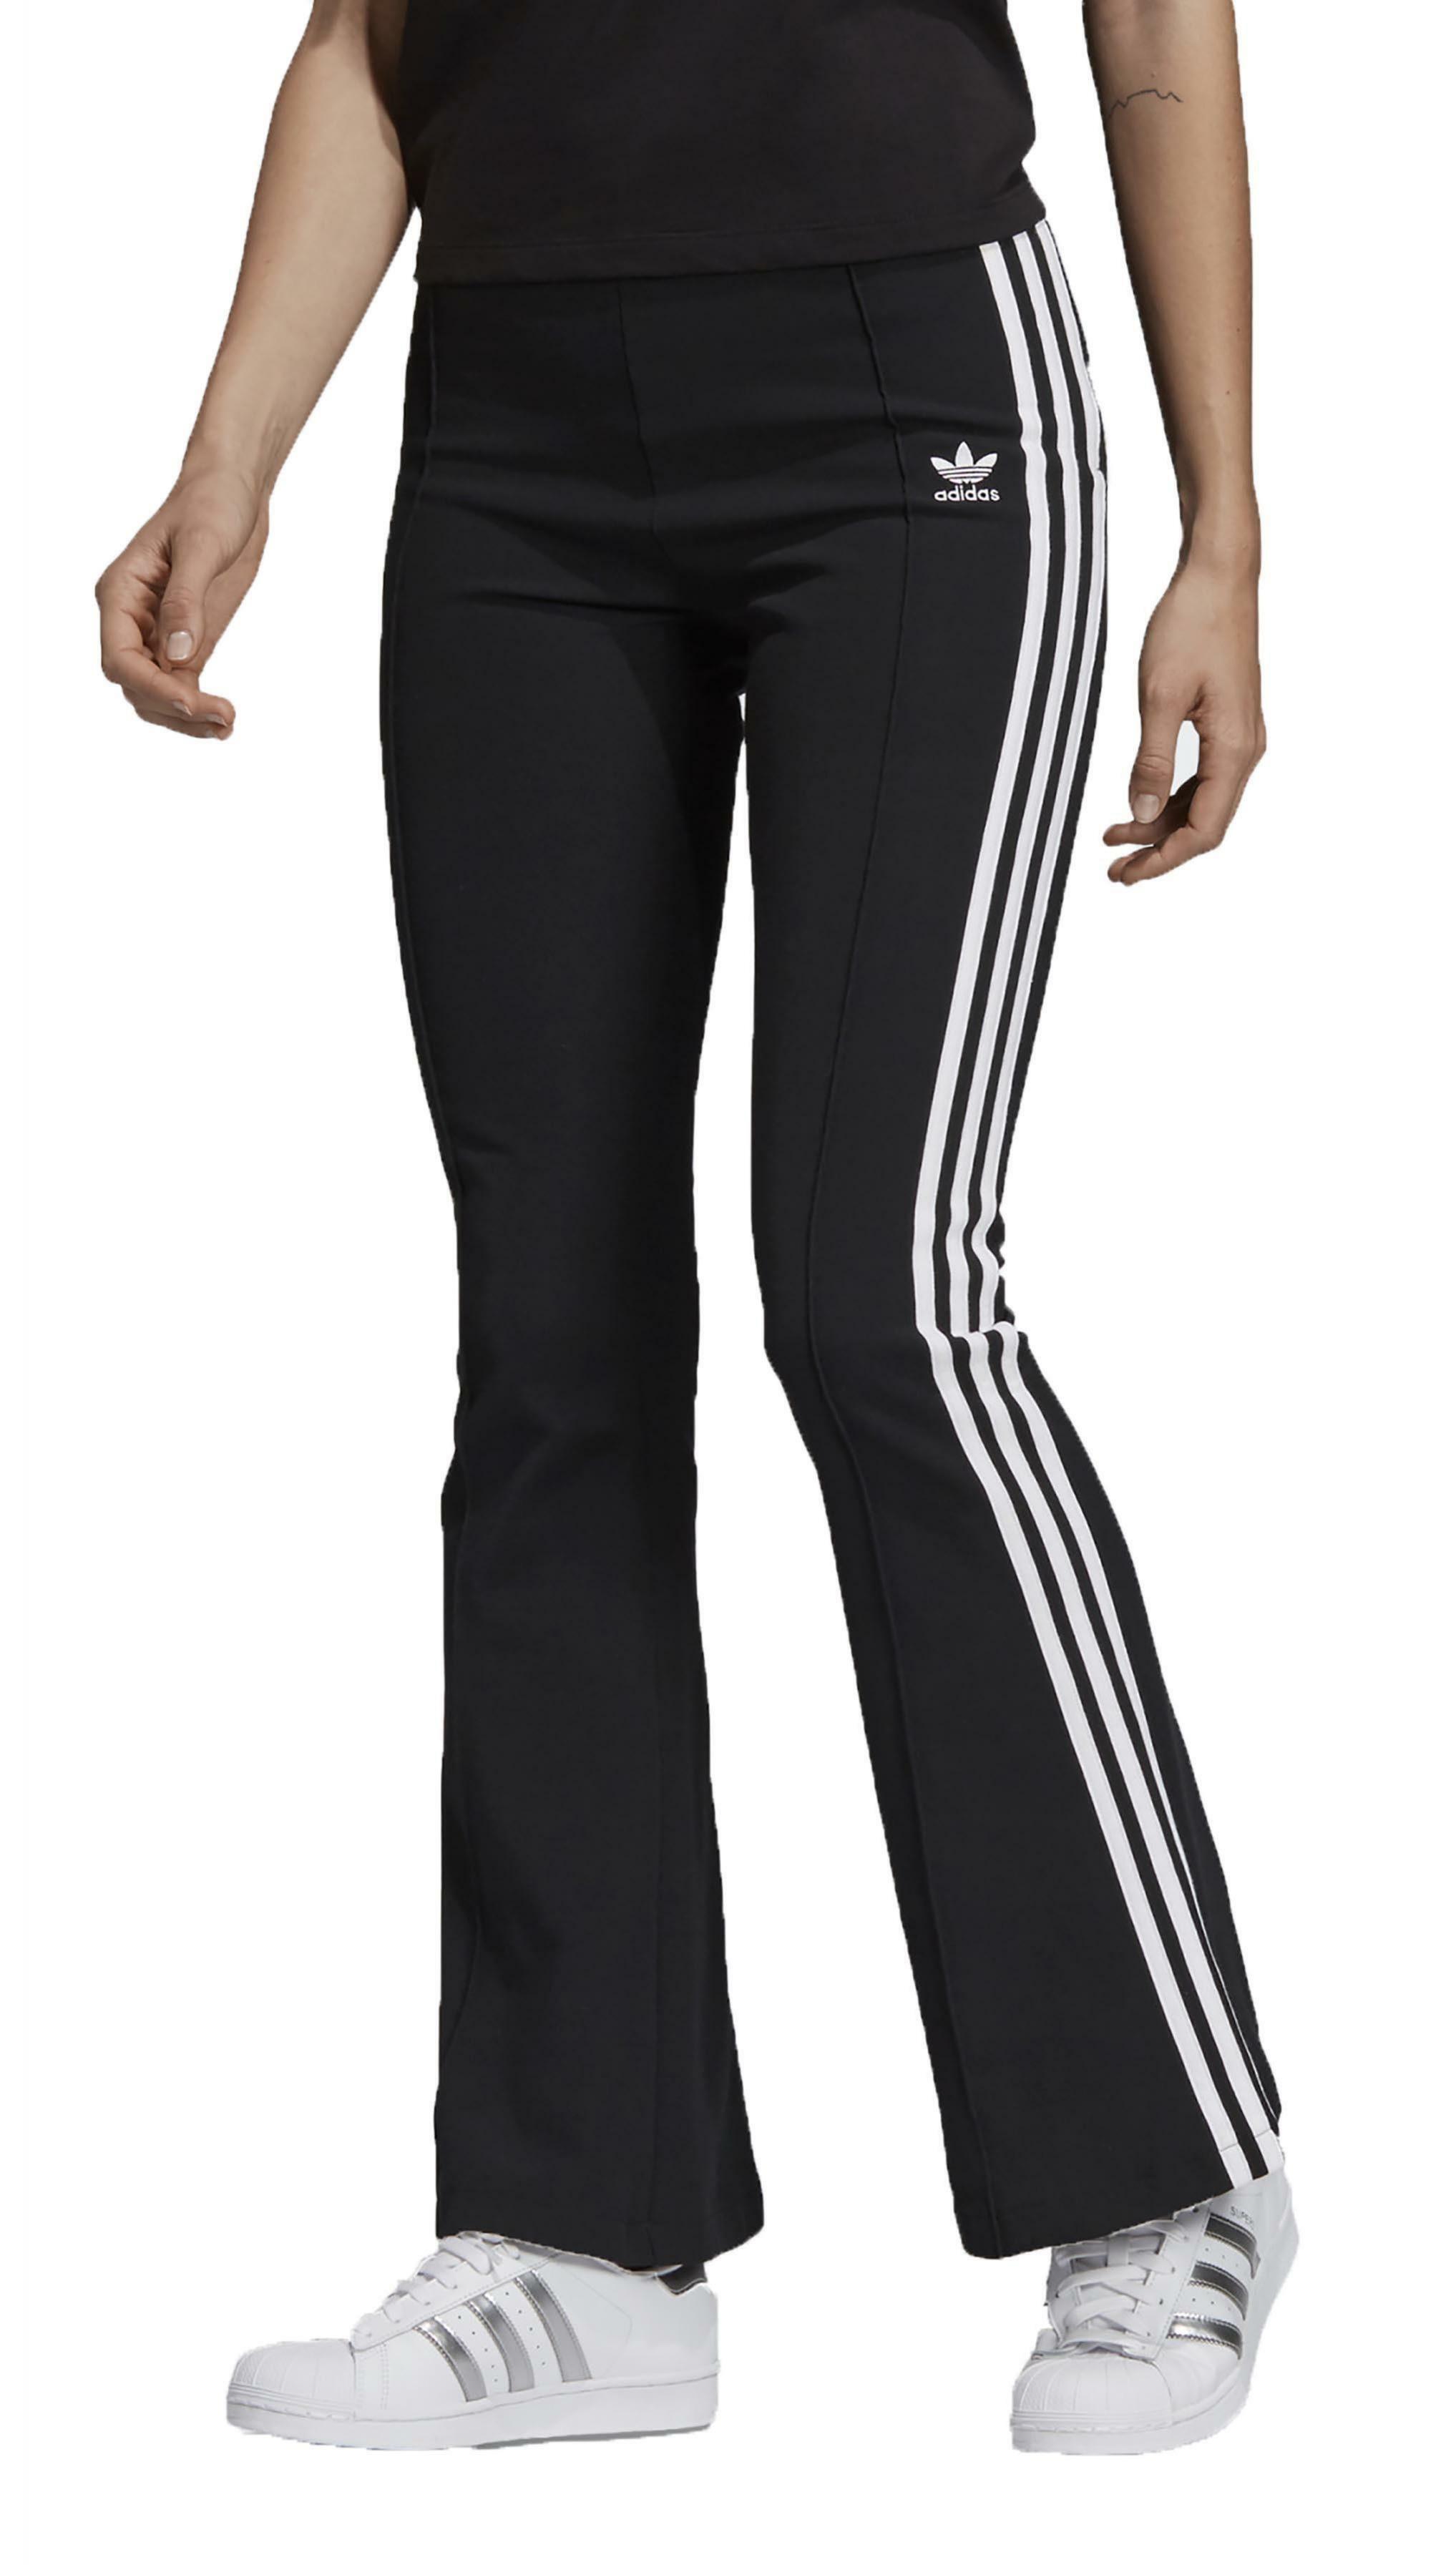 Adidas Flared Trackpant Pantaloni A Zampa Donna Neri DV2602 | eBay